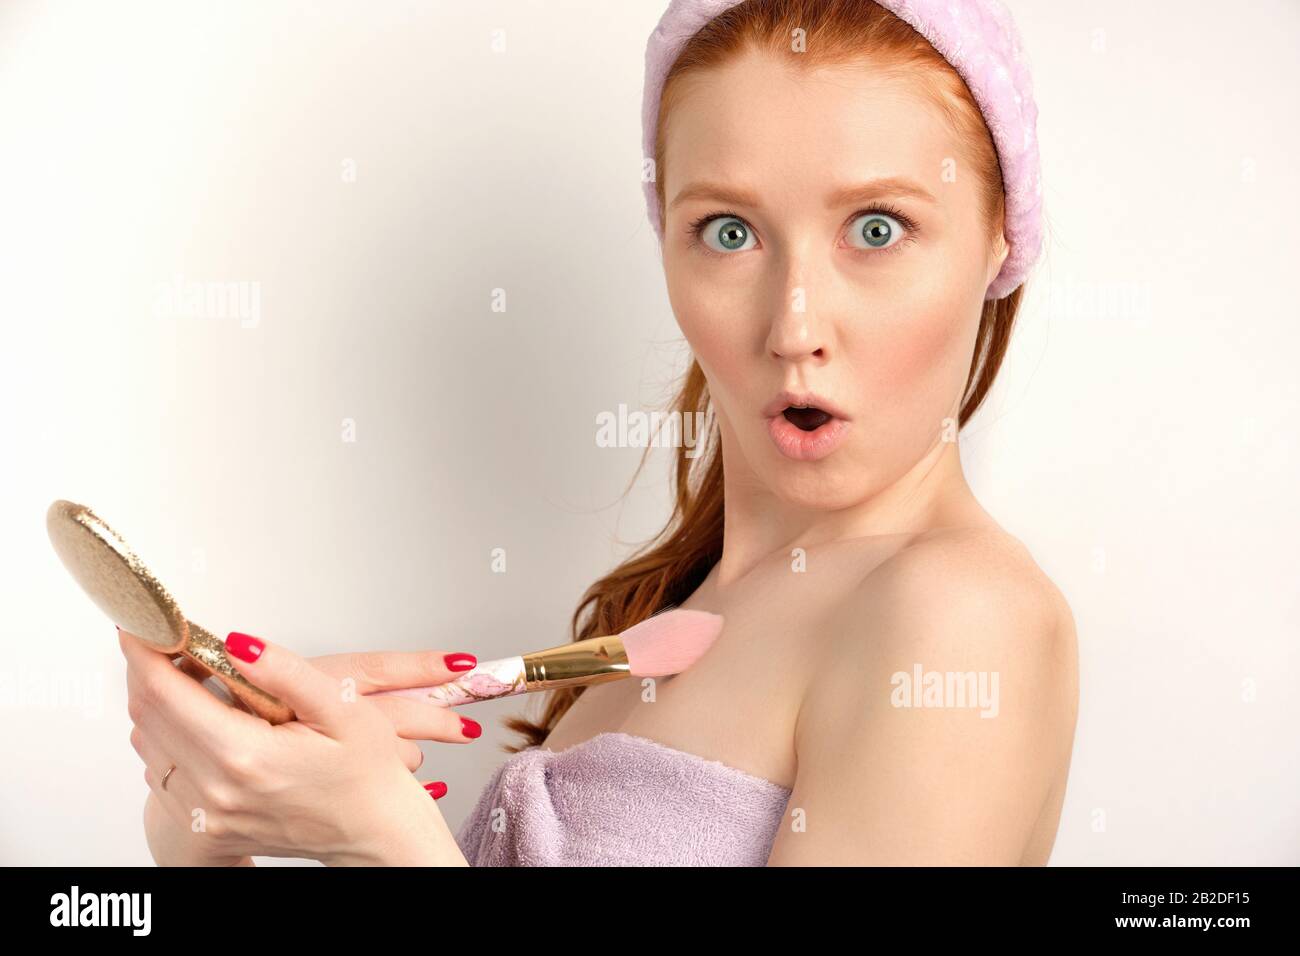 Ein rothaariges Mädchen in einem lilafarbenen Handtuch steht auf einem weißen Hintergrund, wobei ihre Augen überraschend offen sind und die Kamera betrachten. Stockfoto